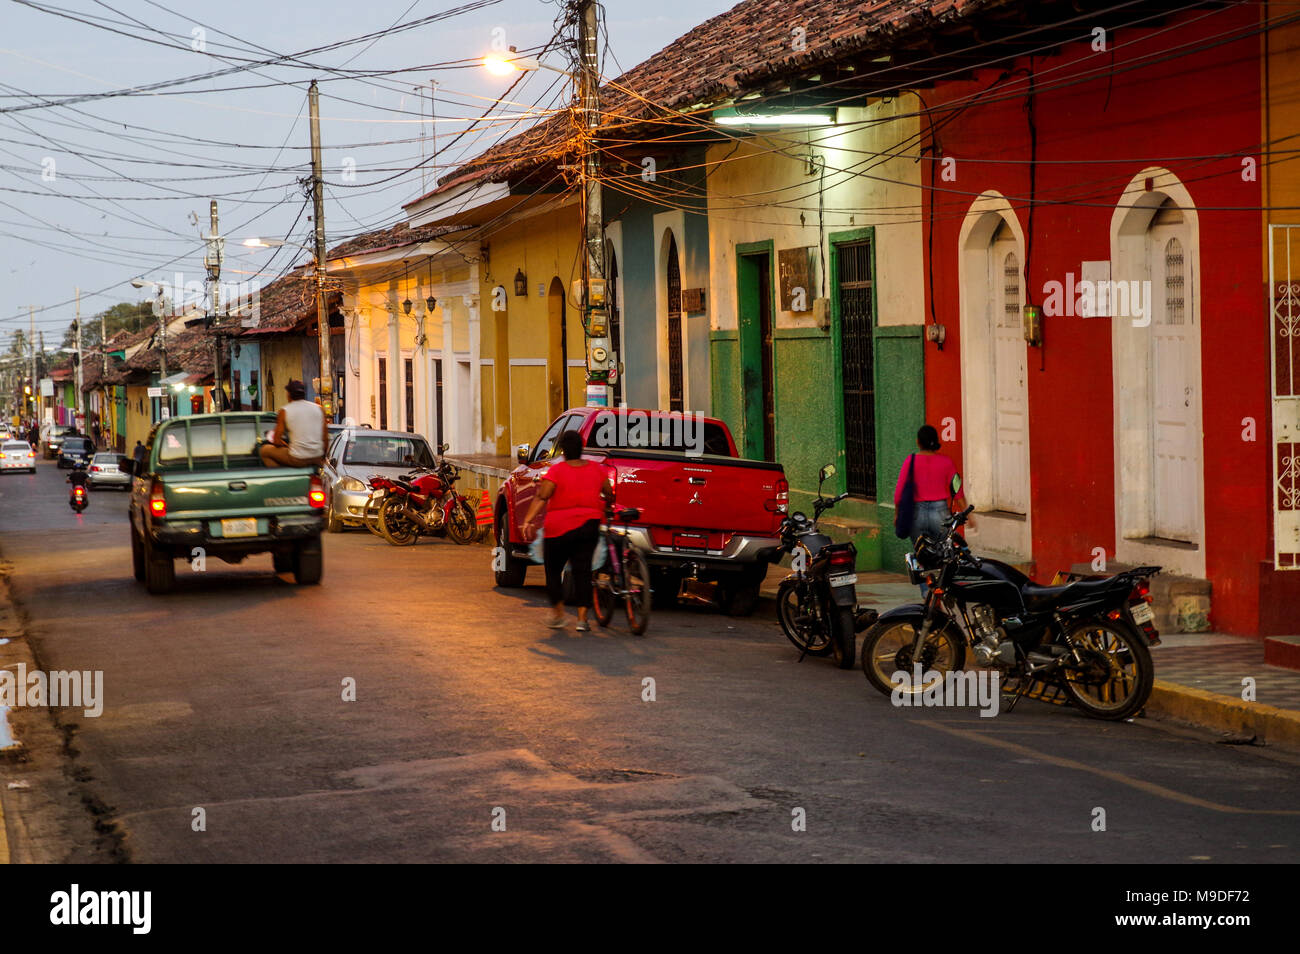 Nuit sur la place animée de rues colorées de la ville coloniale de Granada Nicaragua Banque D'Images